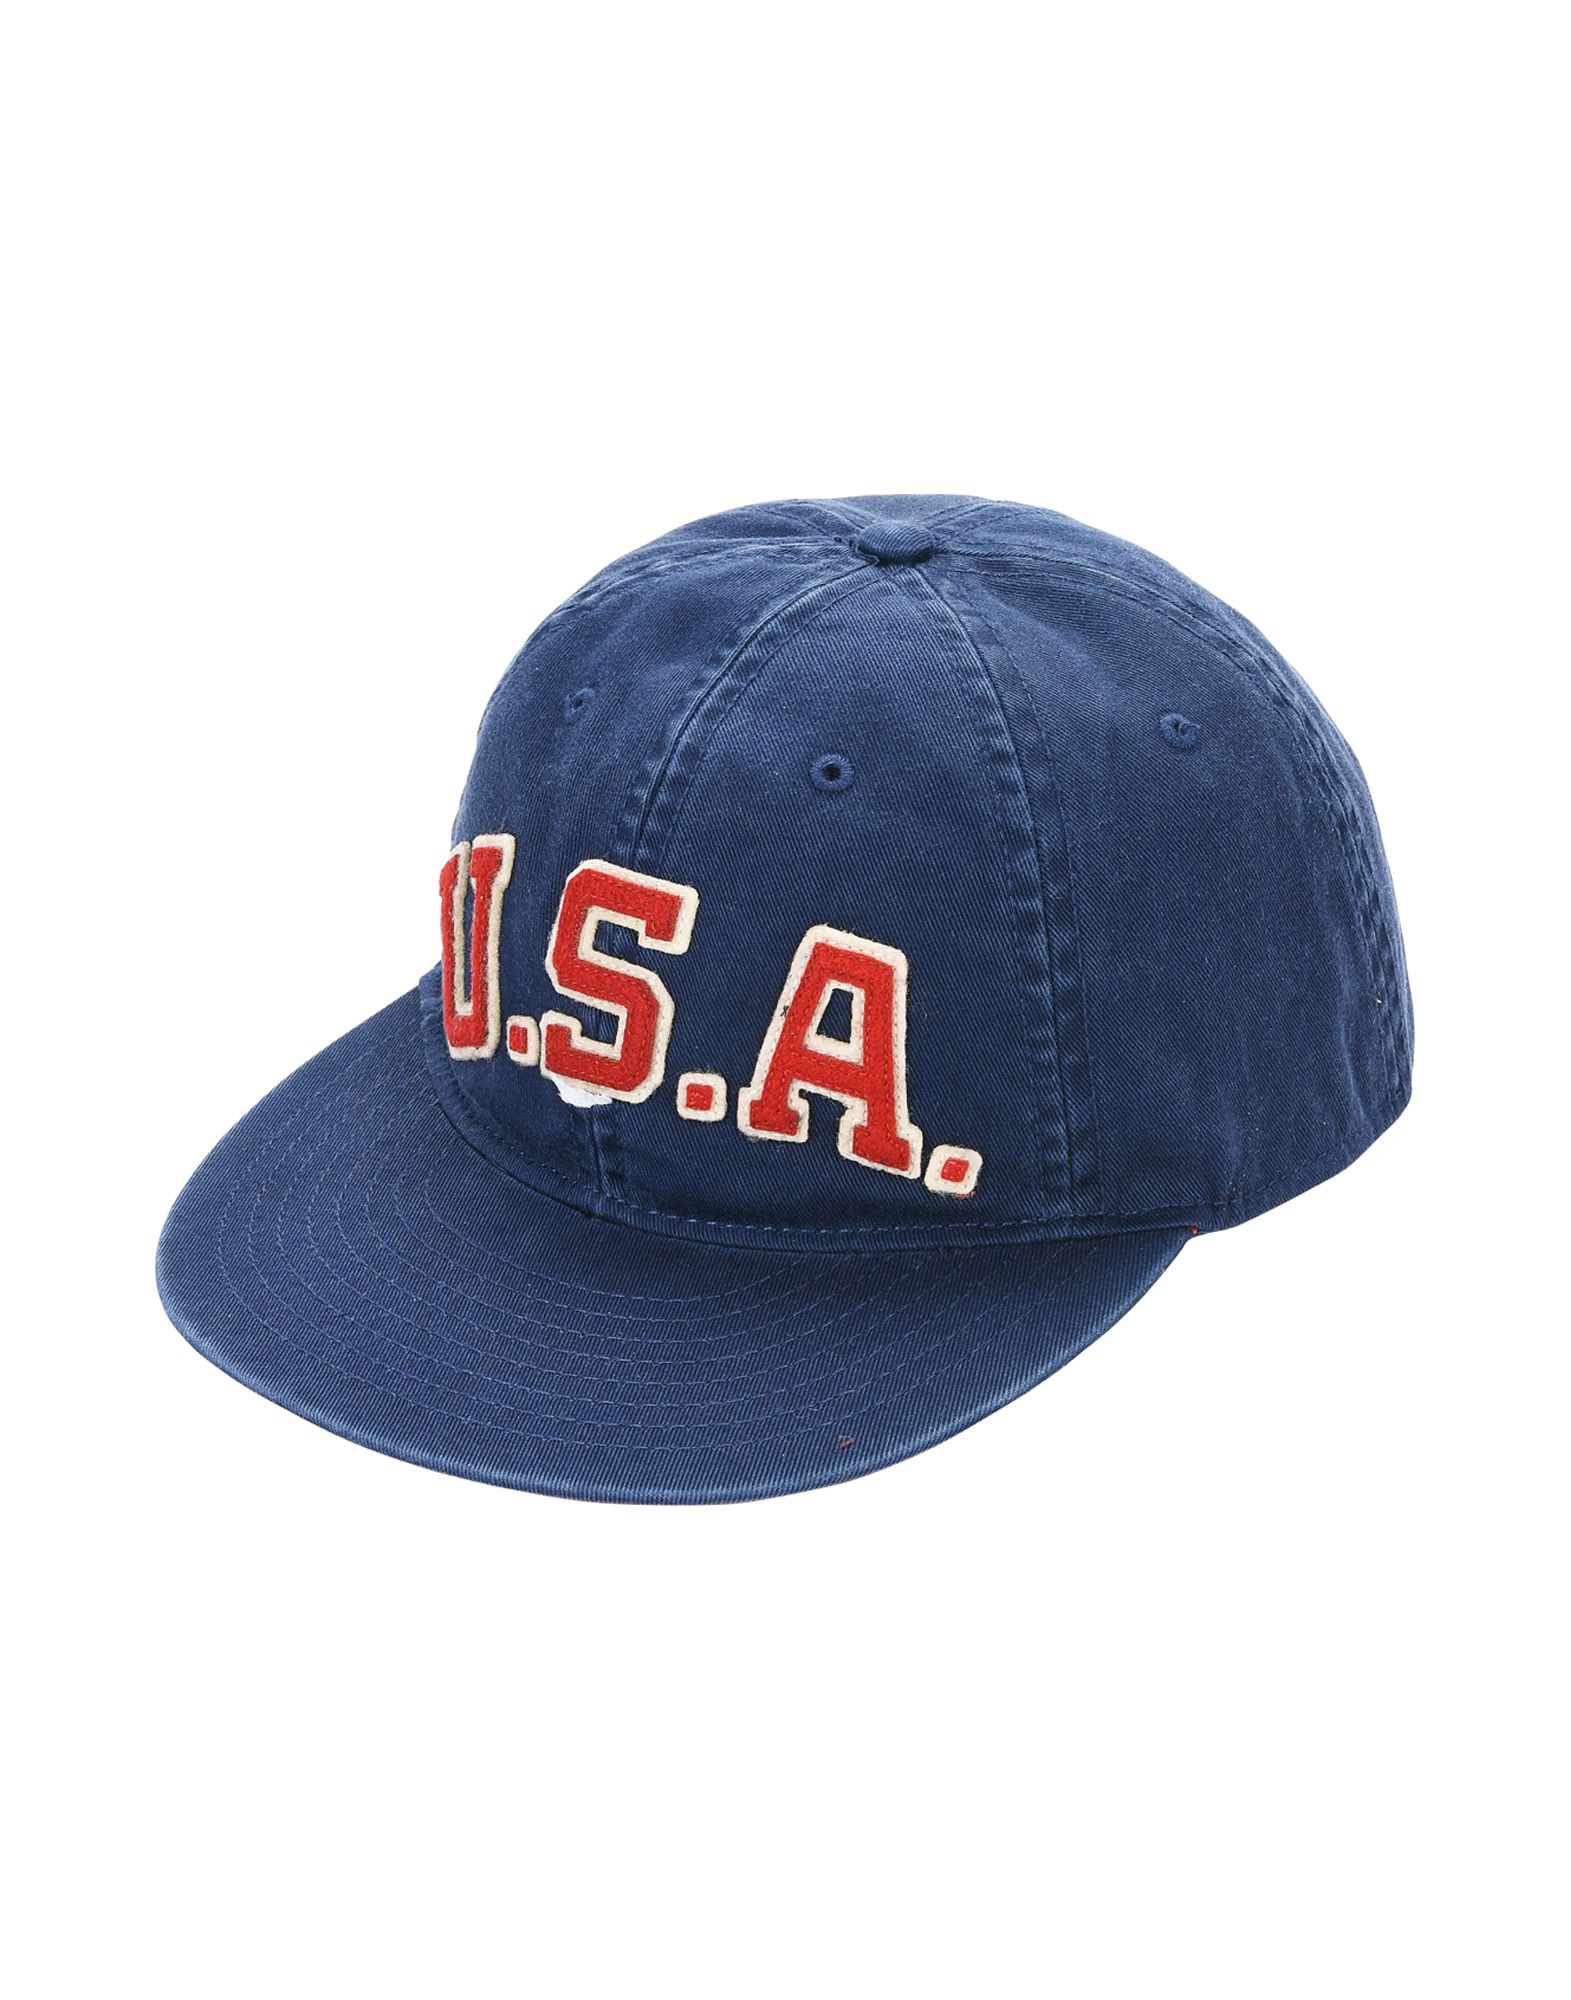 《送料無料》POLO RALPH LAUREN メンズ 帽子 ブルー one size コットン 100% Cotton Baseball Cap